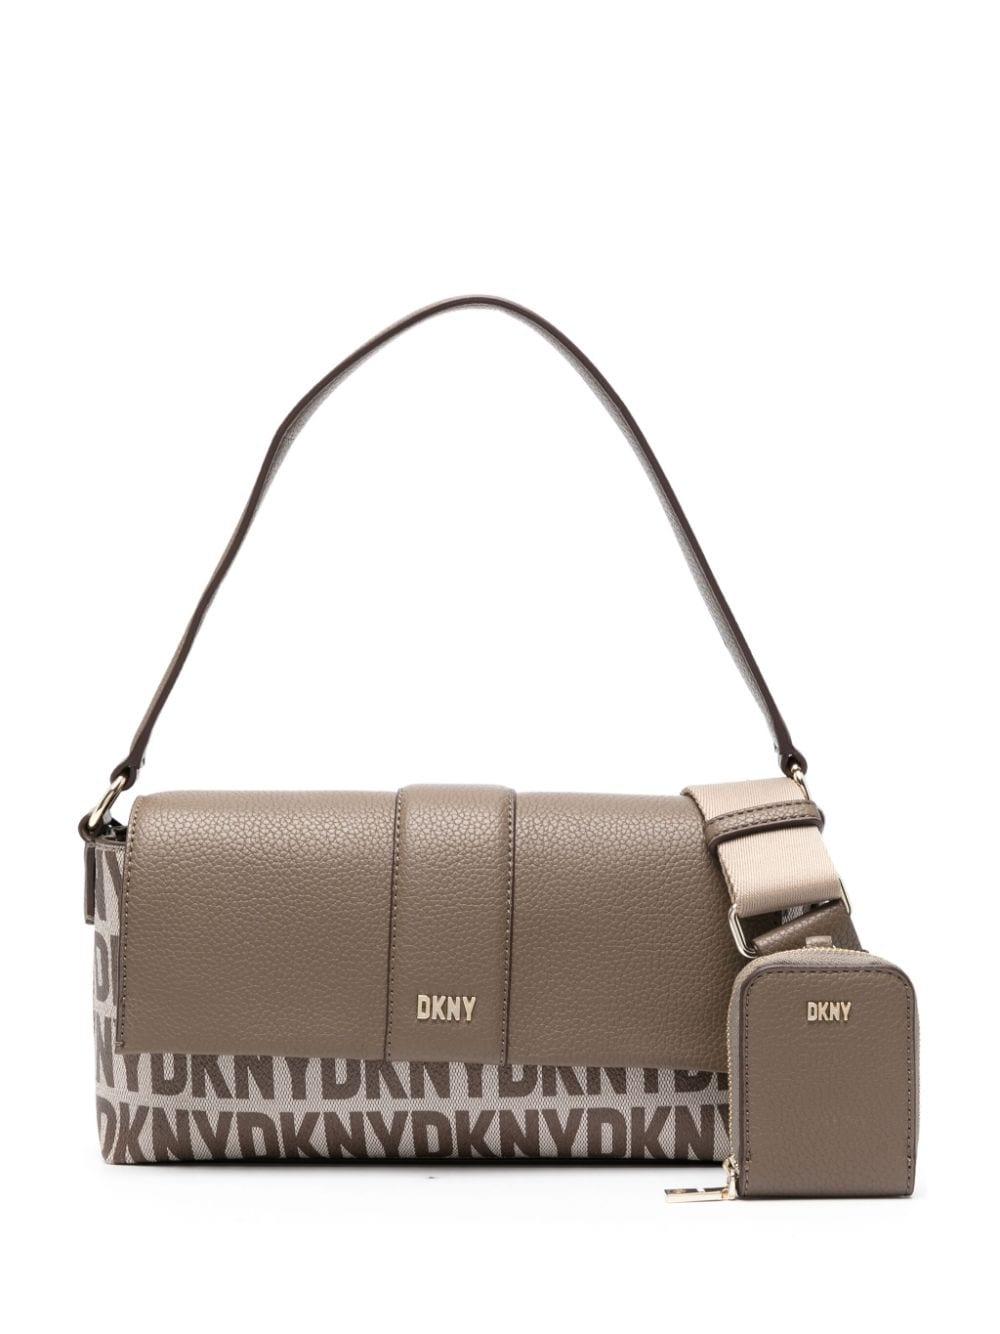 DKNY Brown Shoulder Bags